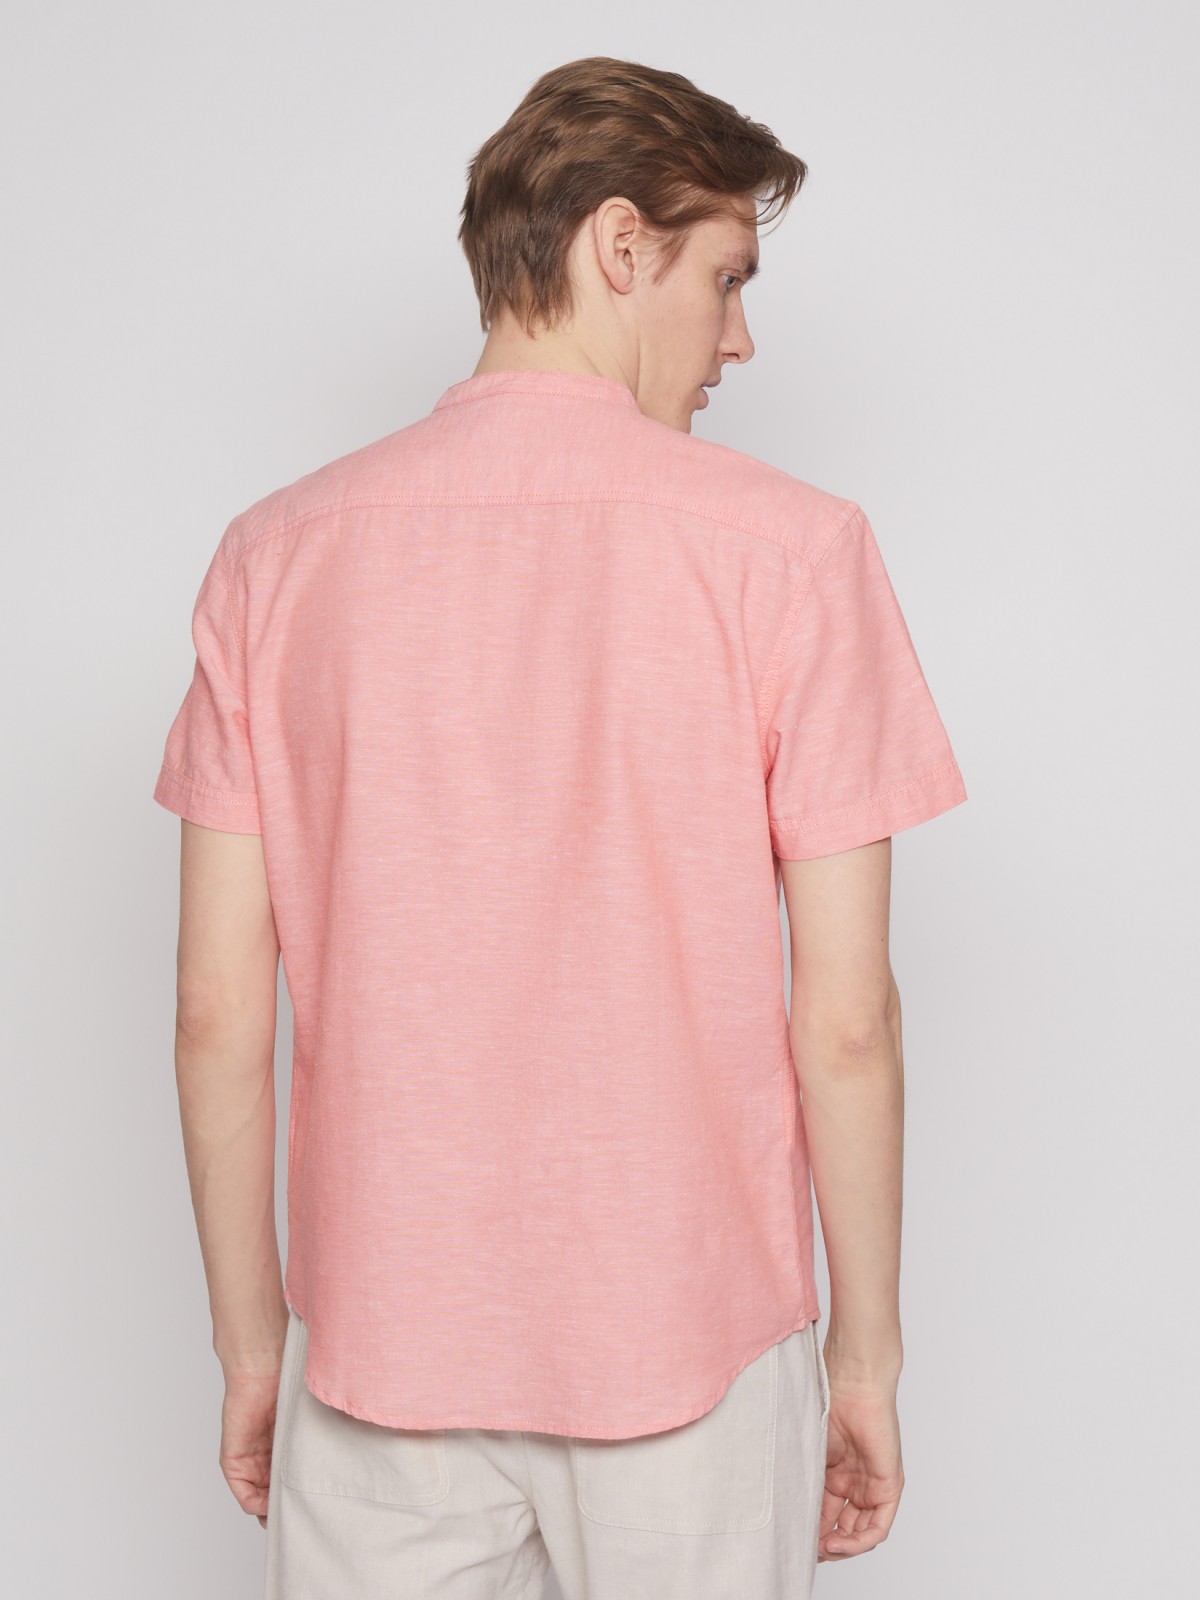 Рубашка с коротким рукавом zolla 012252259043, цвет кораловый, размер S - фото 6